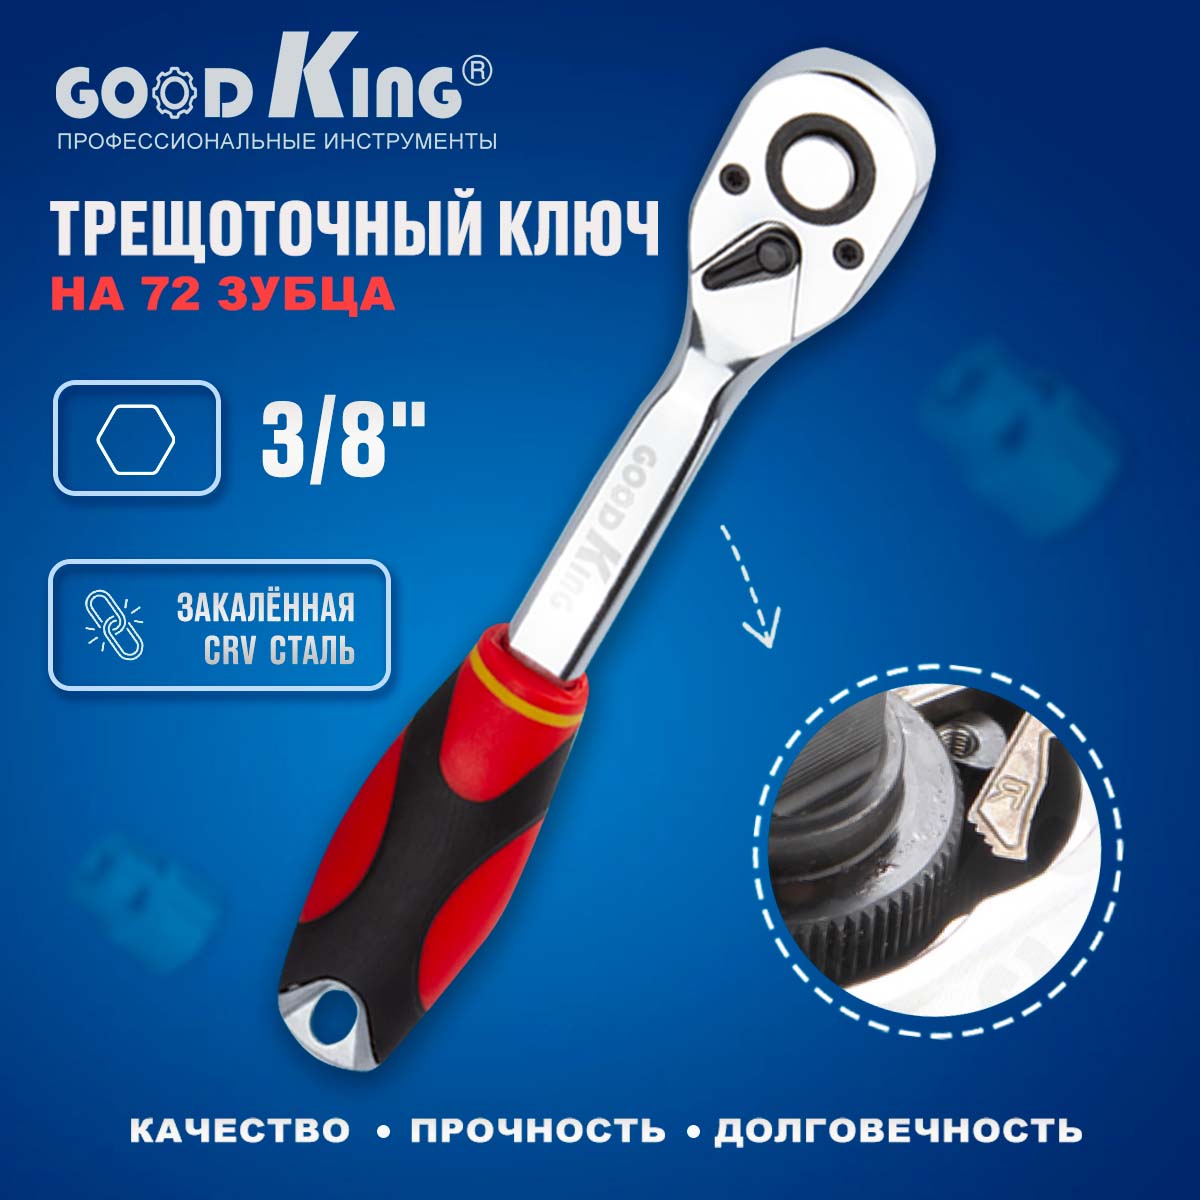 Трещотка 3/8 72 зубца GoodKing T-103872 ключ трещоточный, для ремонта, для авто трещотка goodking t 3872 3 8 на 72 зубца для ремонта для авто